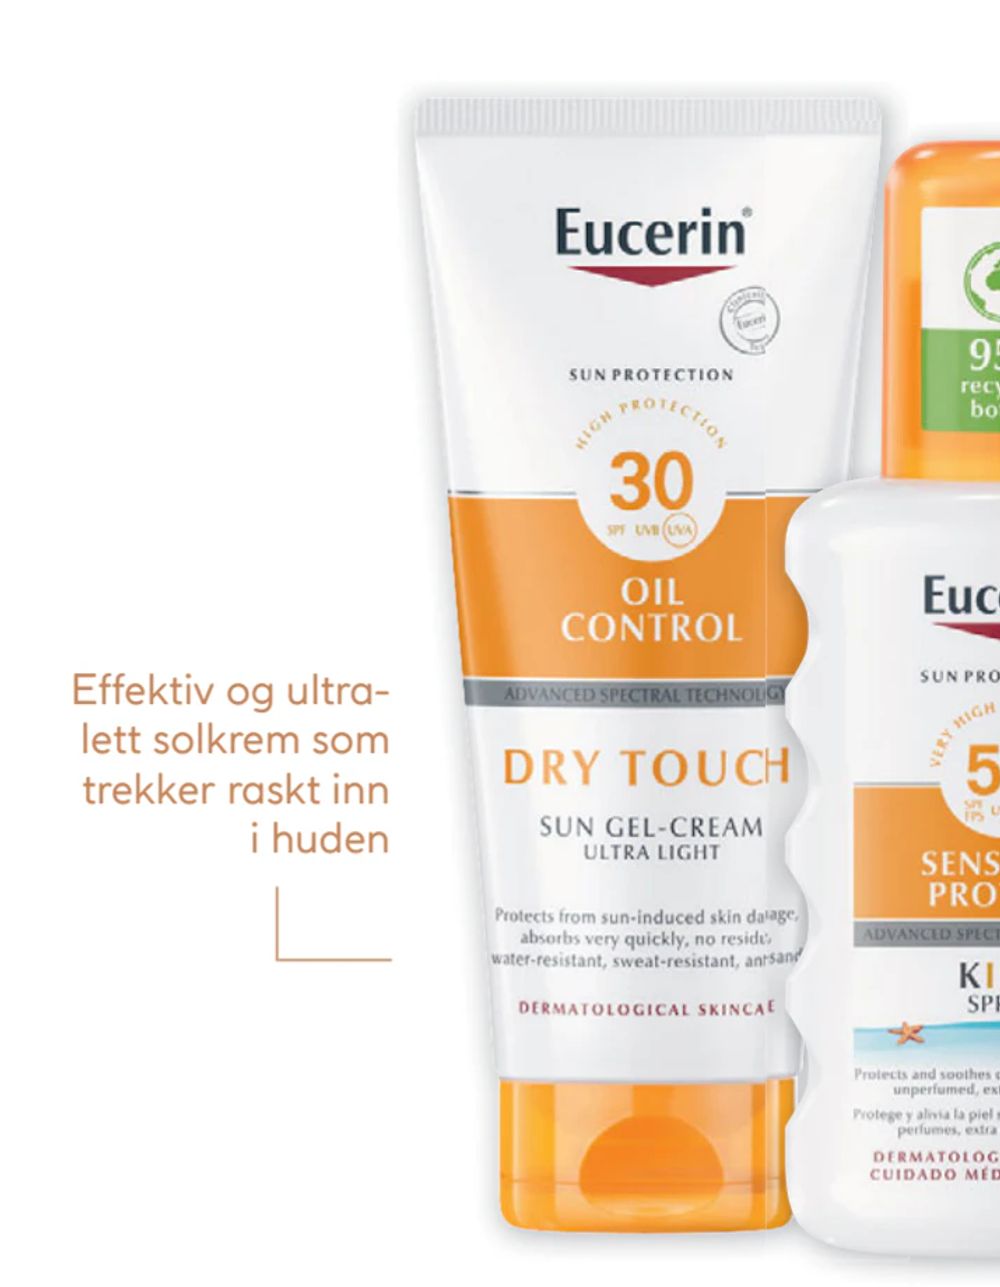 Tilbud på Eucerin Sun Dry Touch SPF 30 fra Vitusapotek til 227,50 kr